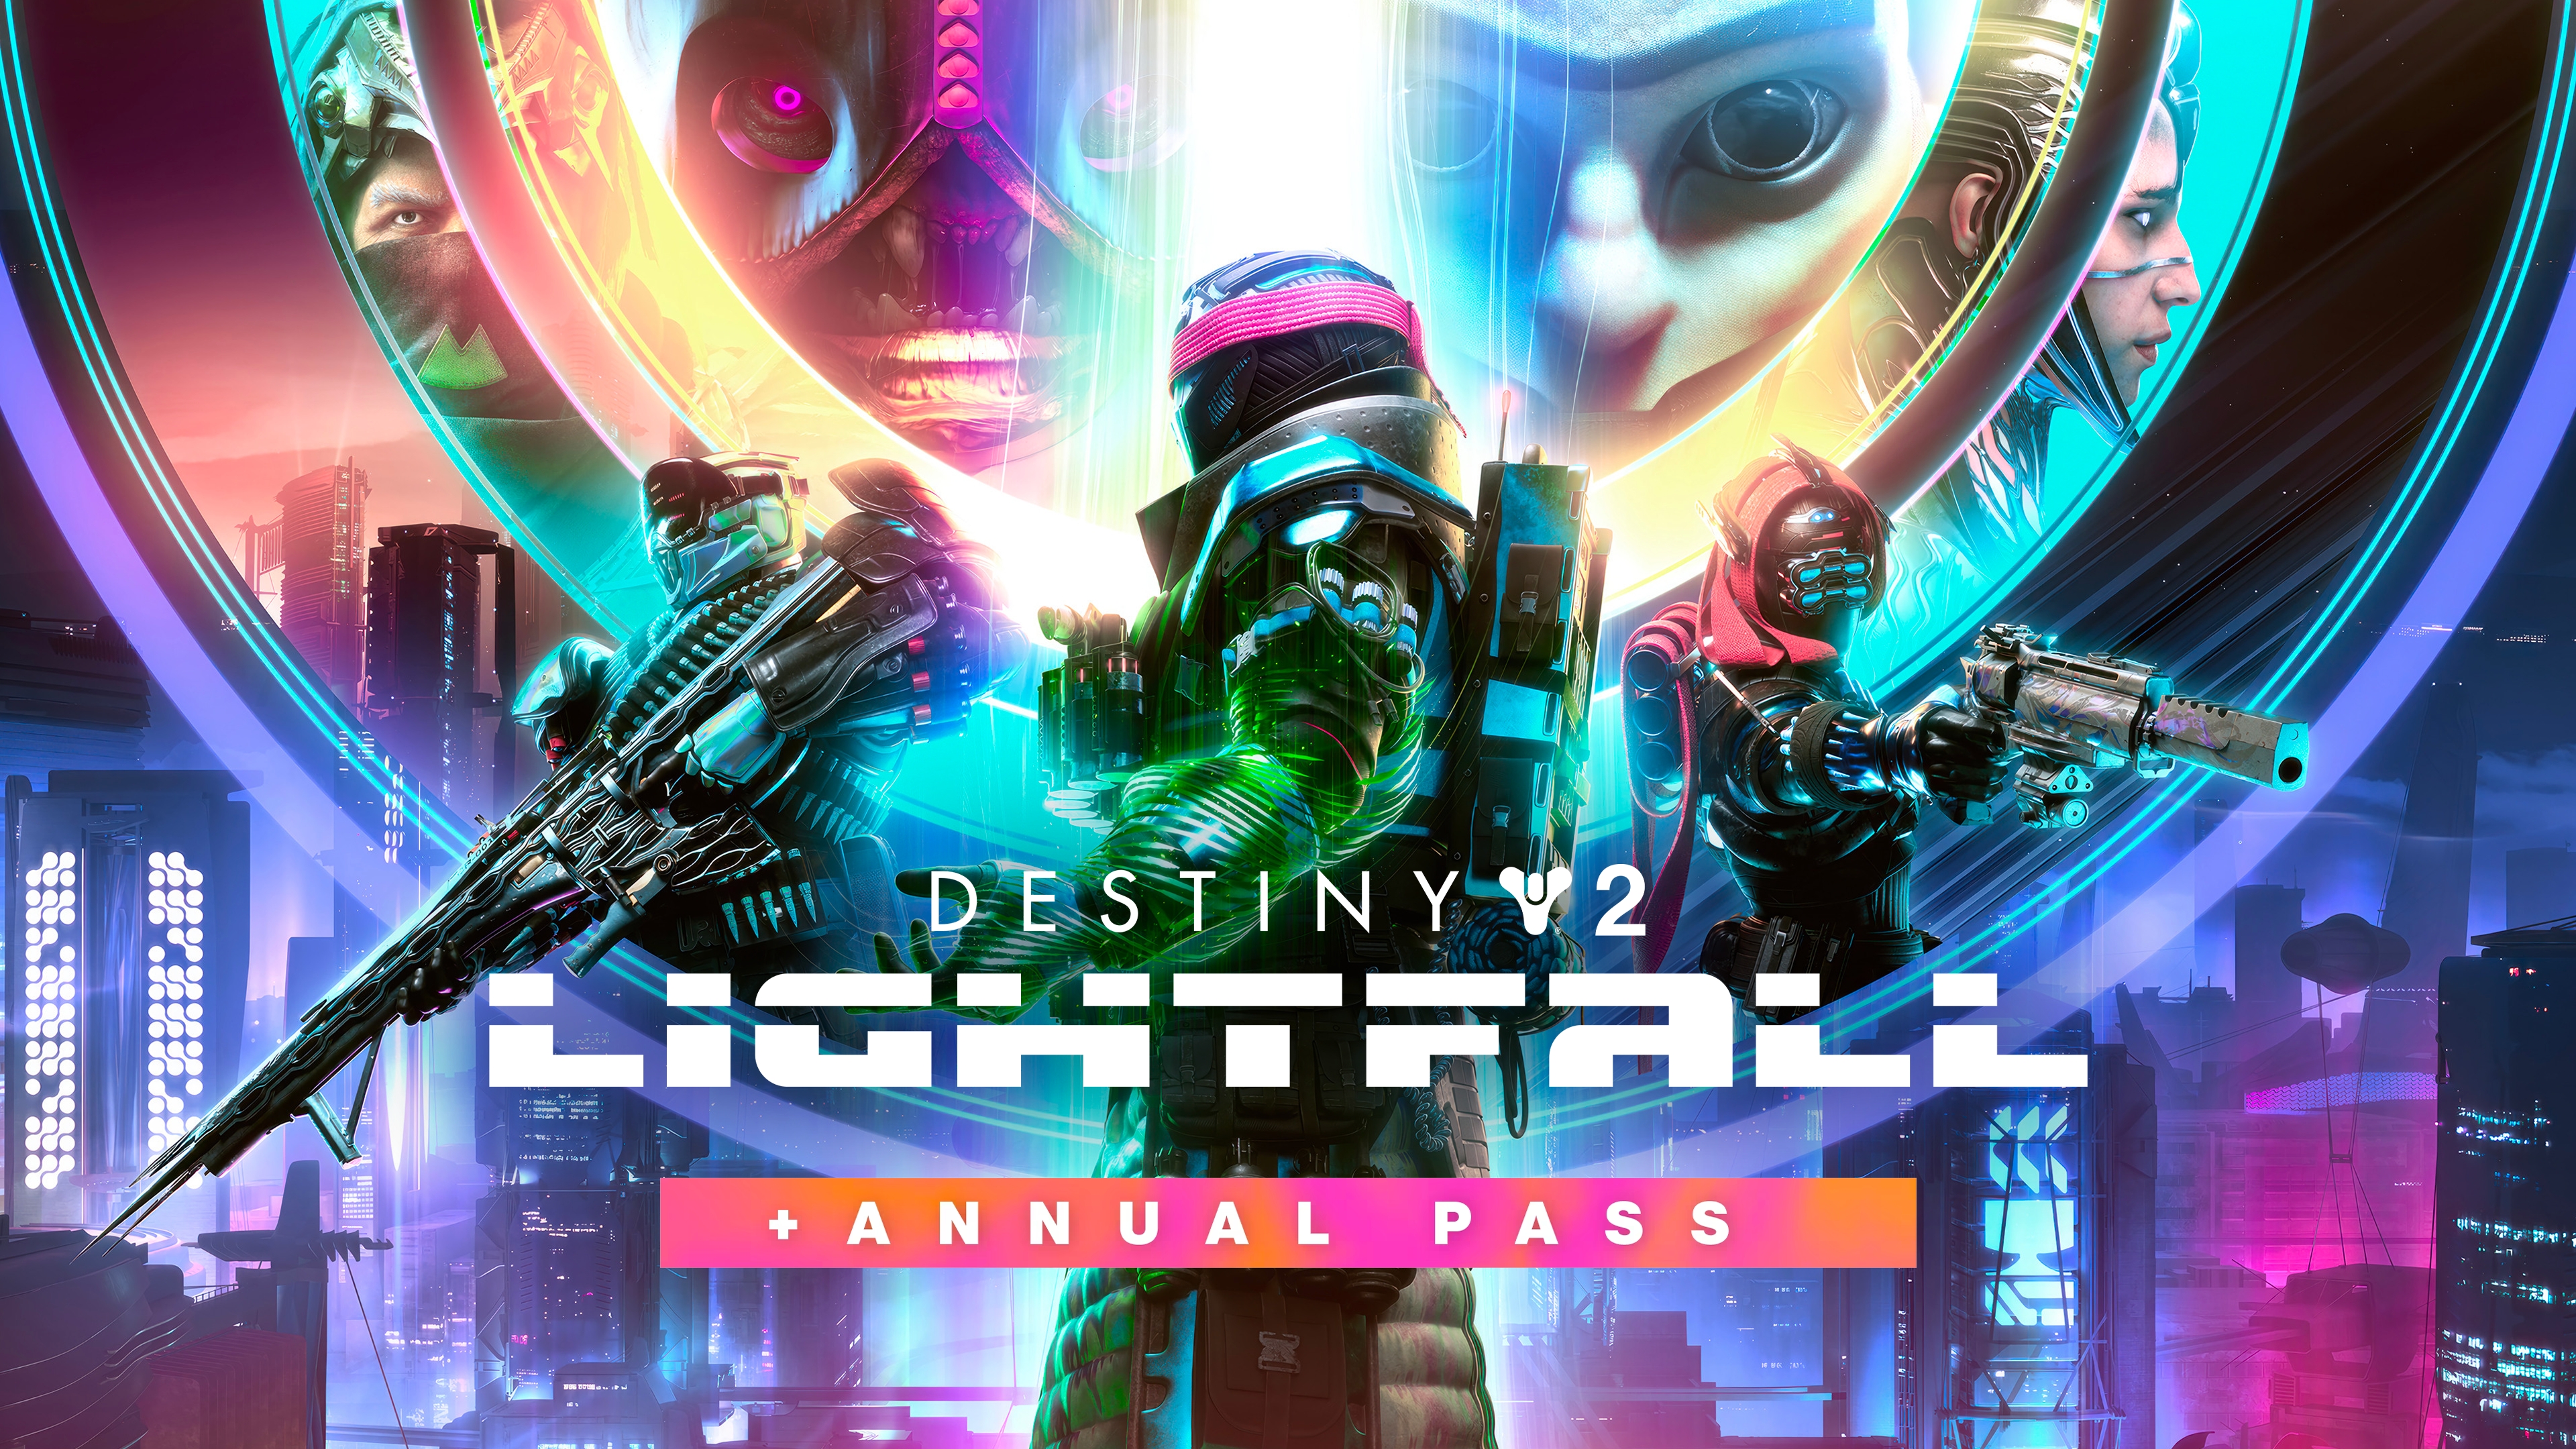 Destiny 2 конец света купить. Дестини 2 конец света. Destiny 2 Destiny 2 Lightfall + Annual Pass. Destiny 2 Lightfall. Destiny 2 Light Fall.